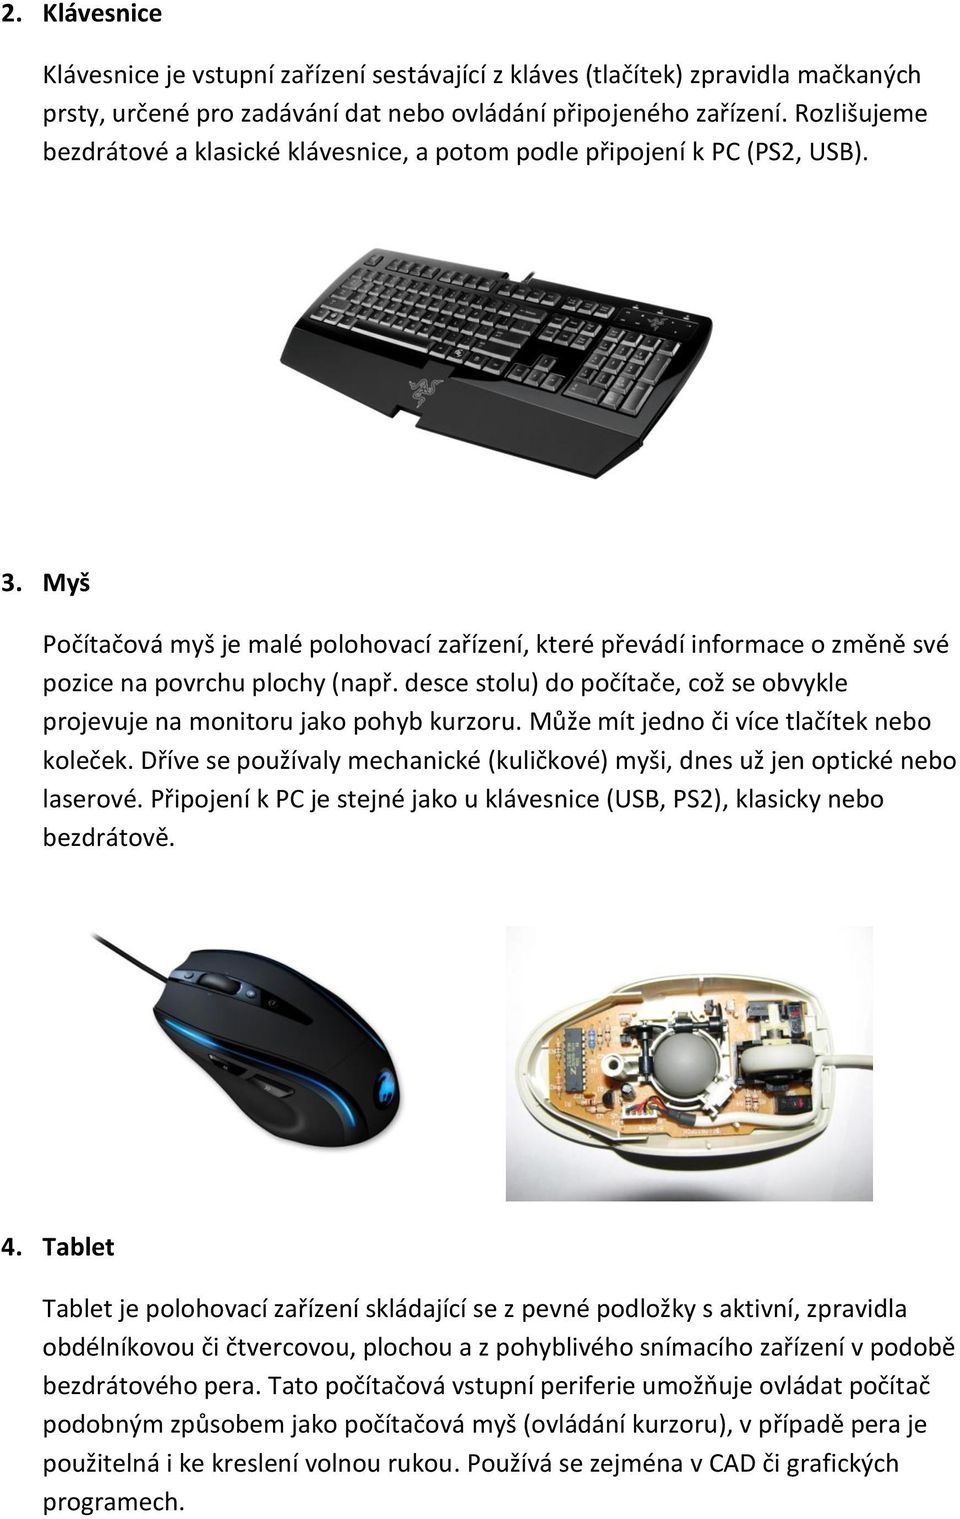 Myš Počítačová myš je malé polohovací zařízení, které převádí informace o změně své pozice na povrchu plochy (např. desce stolu) do počítače, což se obvykle projevuje na monitoru jako pohyb kurzoru.